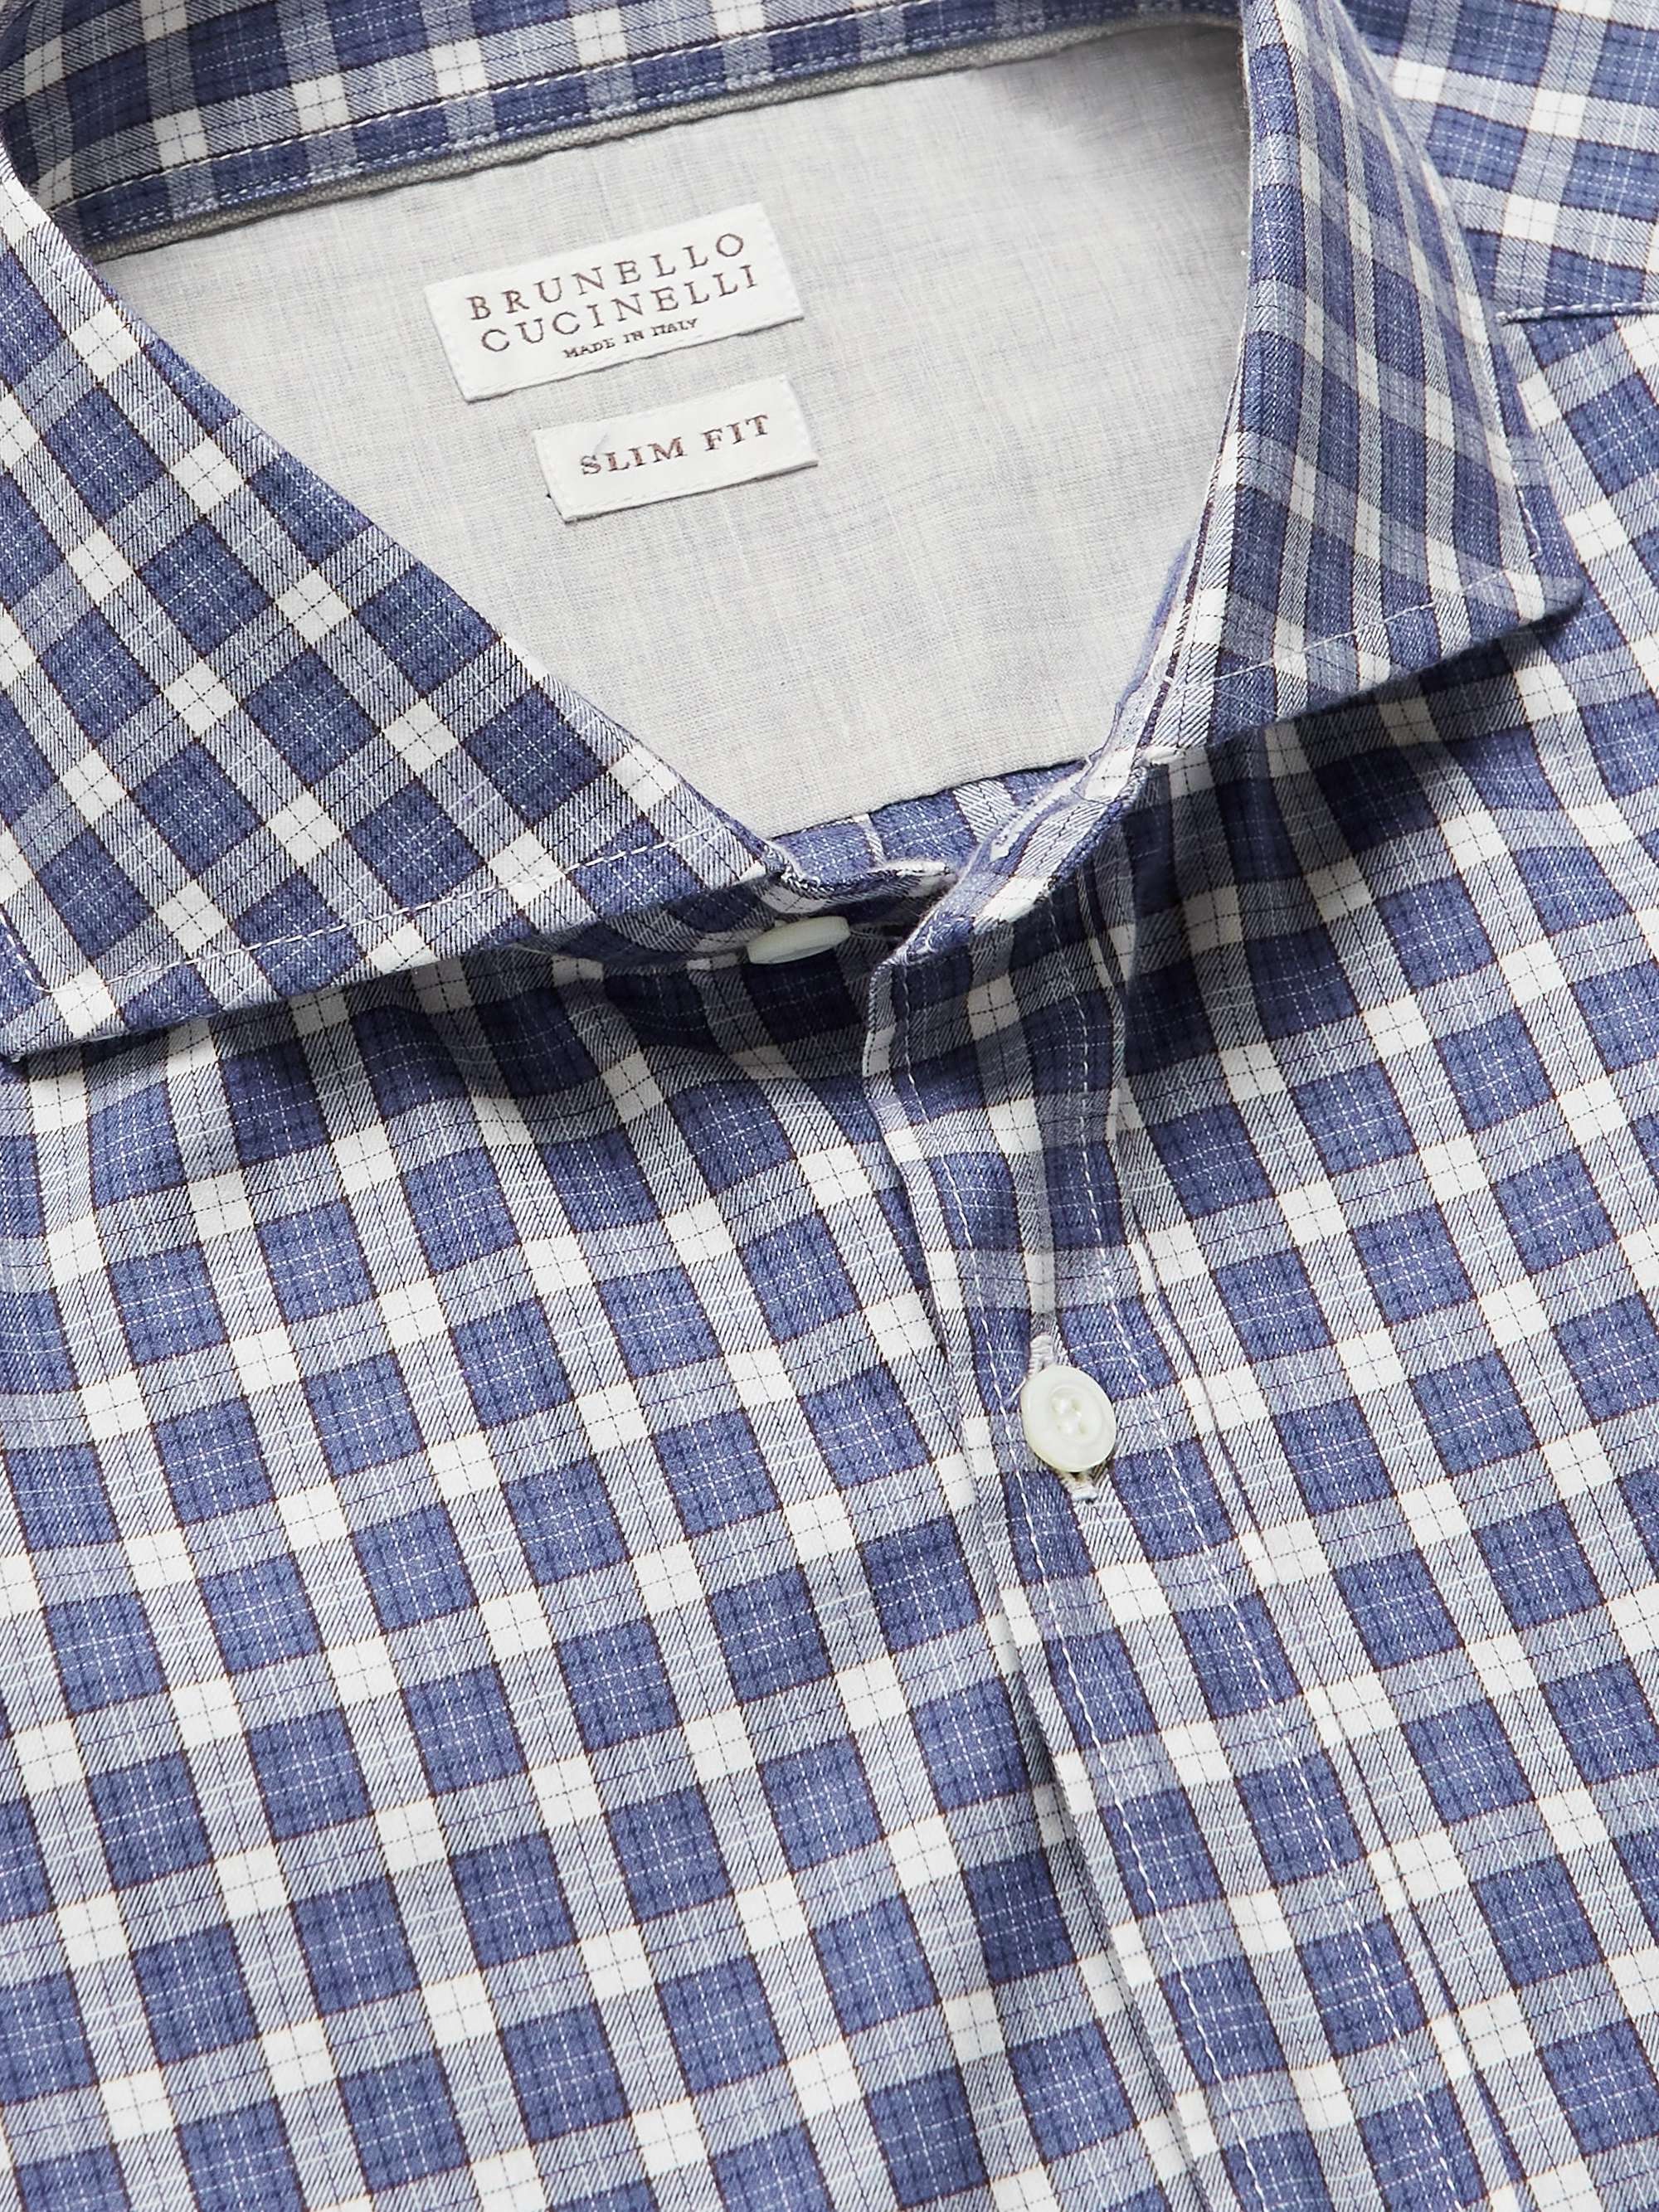 BRUNELLO CUCINELLI Slim-Fit Cutaway-Collar Checked Cotton Shirt